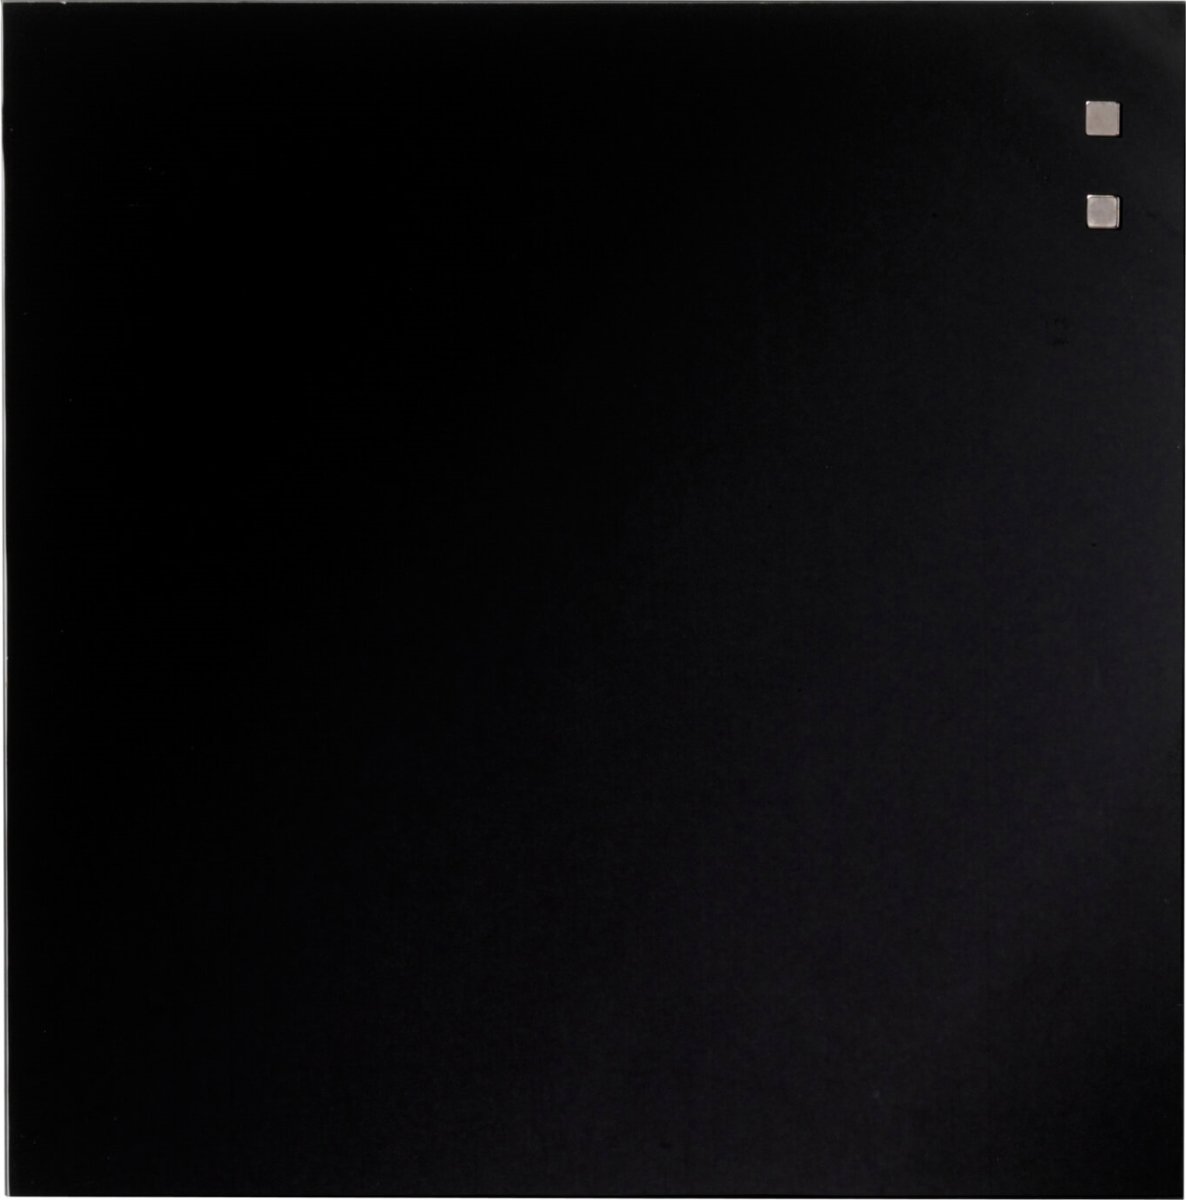 NAGA magnetisk glastavla, 35x35 cm, svart